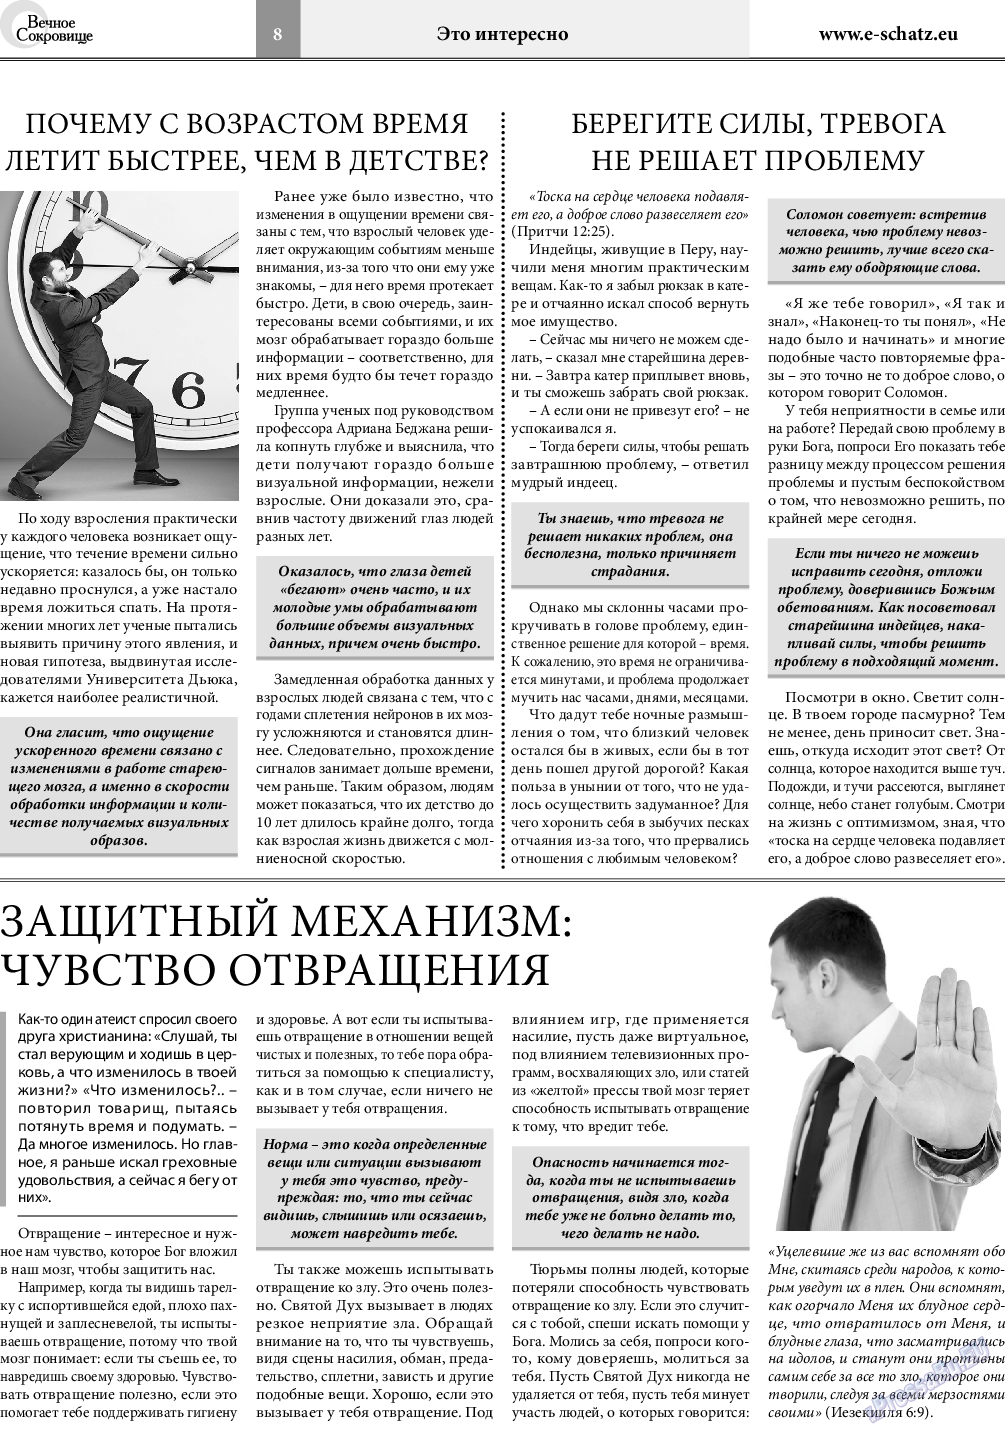 Вечное сокровище, газета. 2019 №3 стр.8